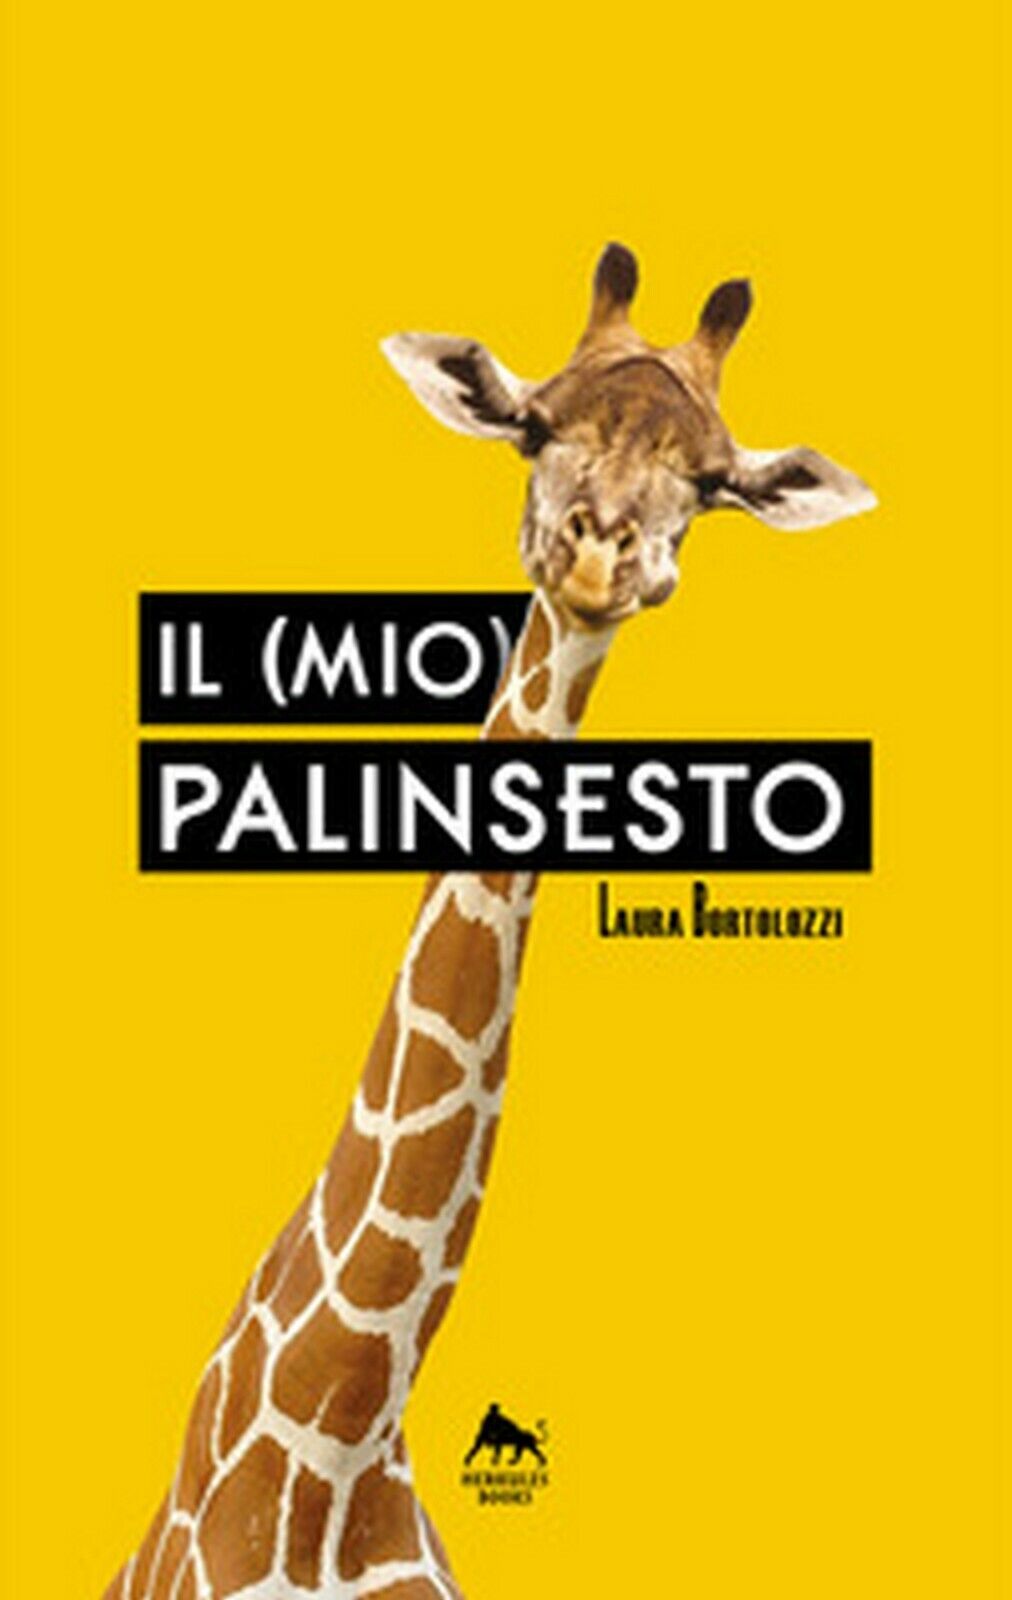 Il (mio) palinsesto  di Laura Bortolozzi,  2018,  Herkules Books